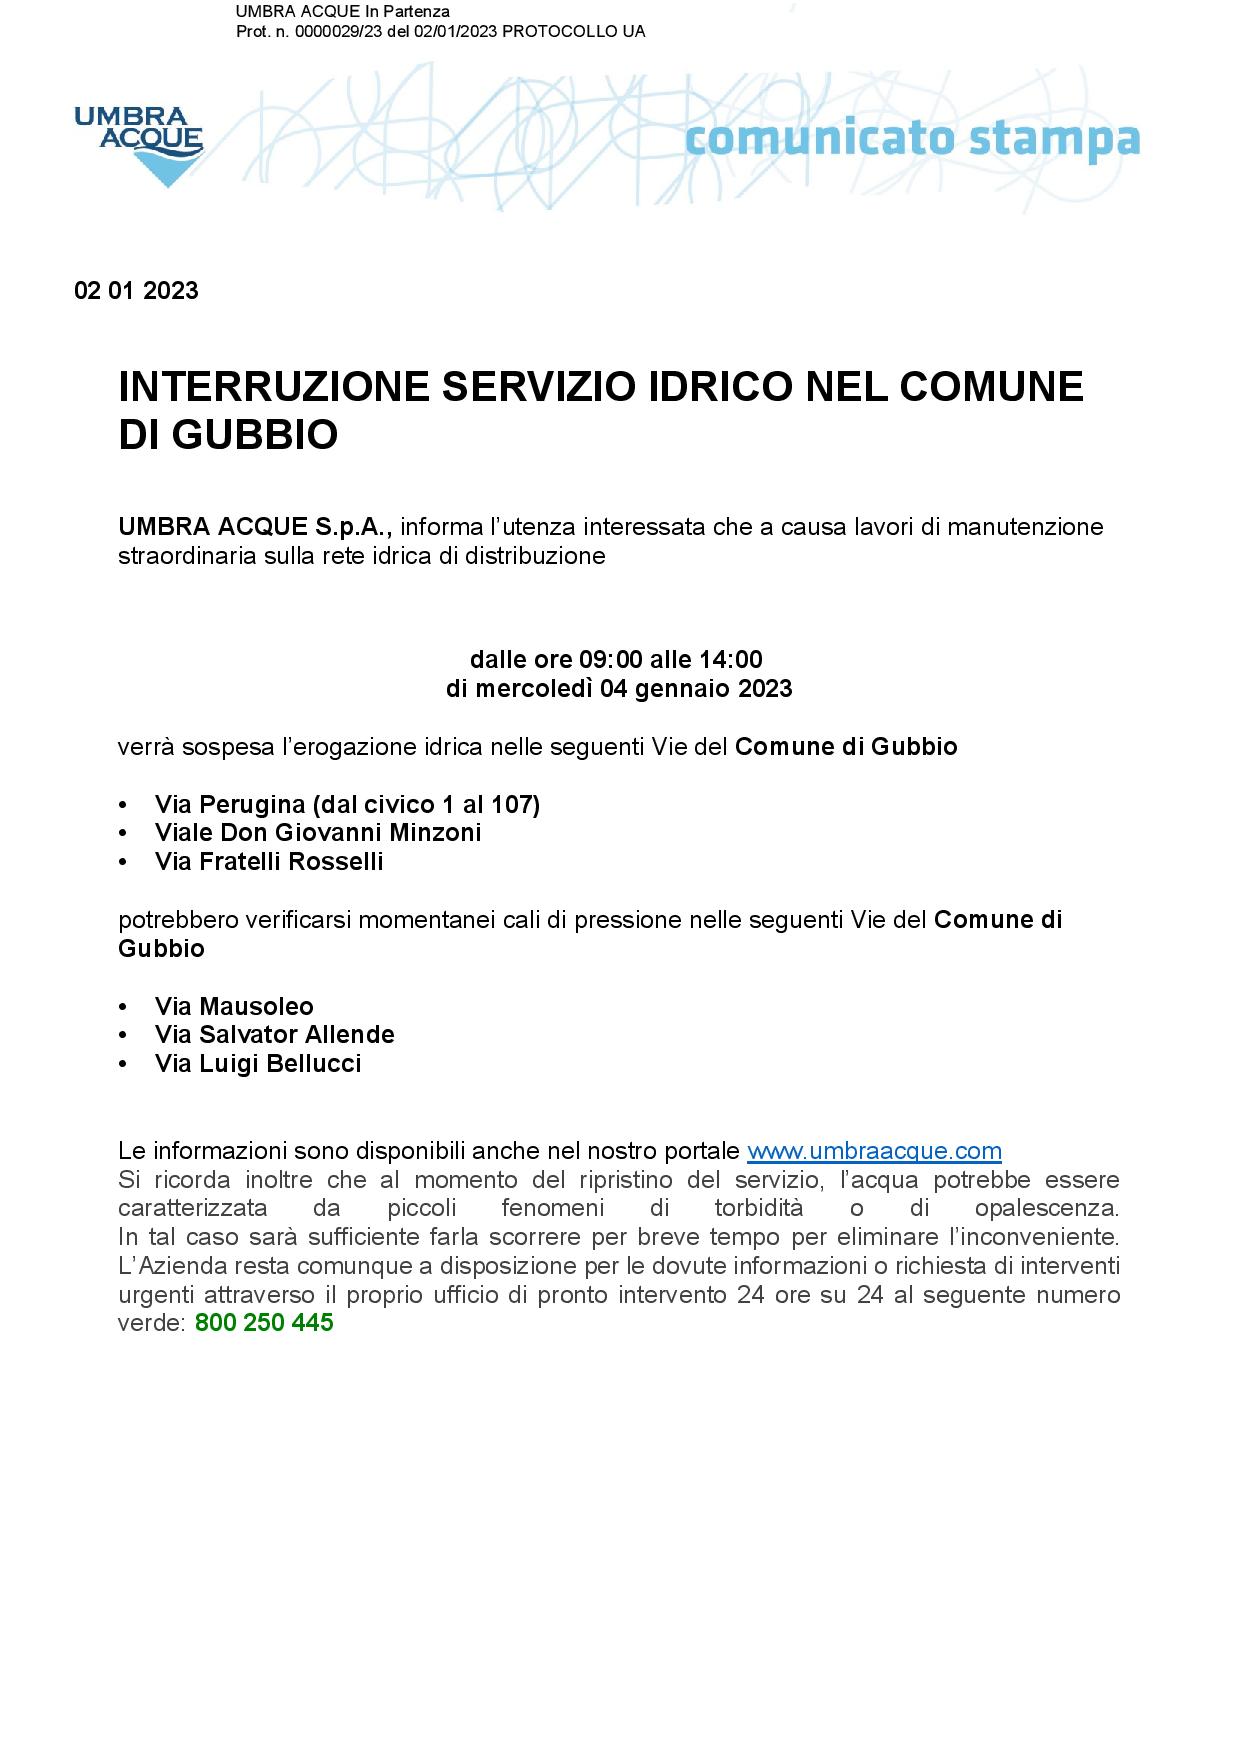 1-INTERRUZIONE-SERVIZIO-IDRICO-COMUNE-DI-GUBBIO-04-GENNAIO-page-001 181